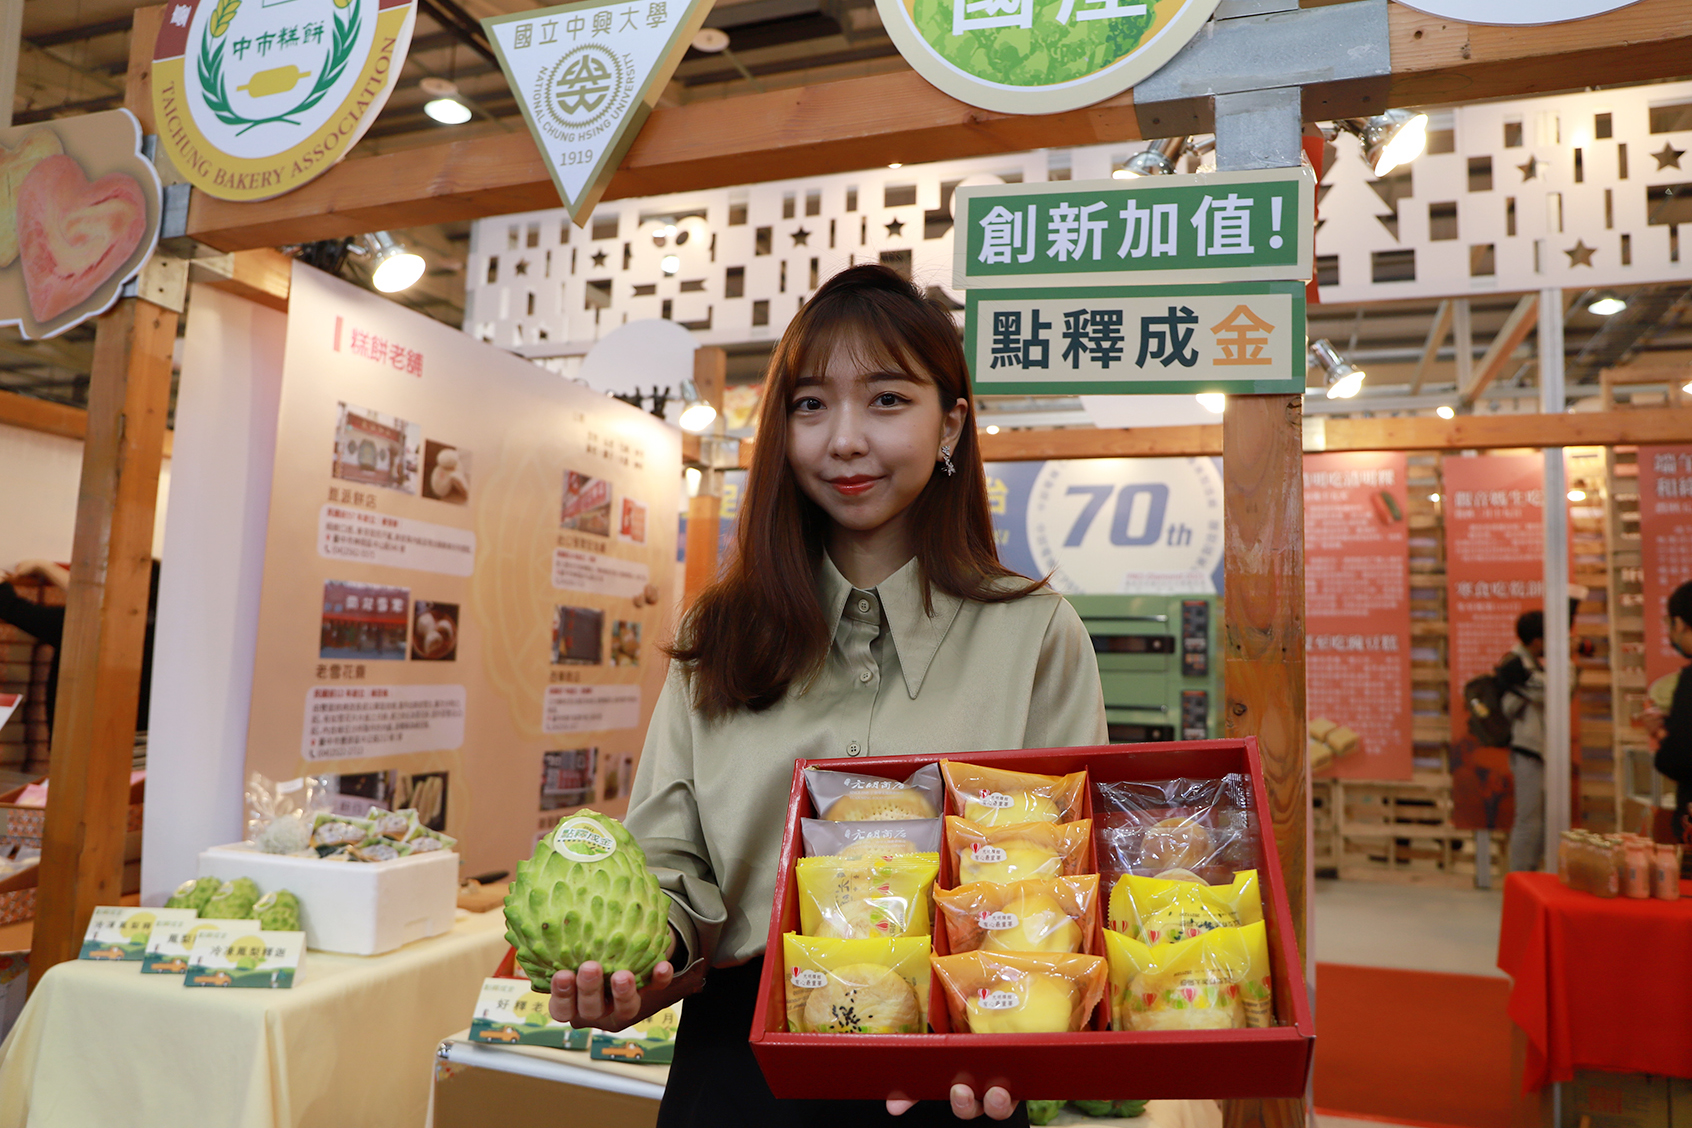 興大與臺中市糕餅公會合作產品展示多款創新鳳梨釋迦糕餅